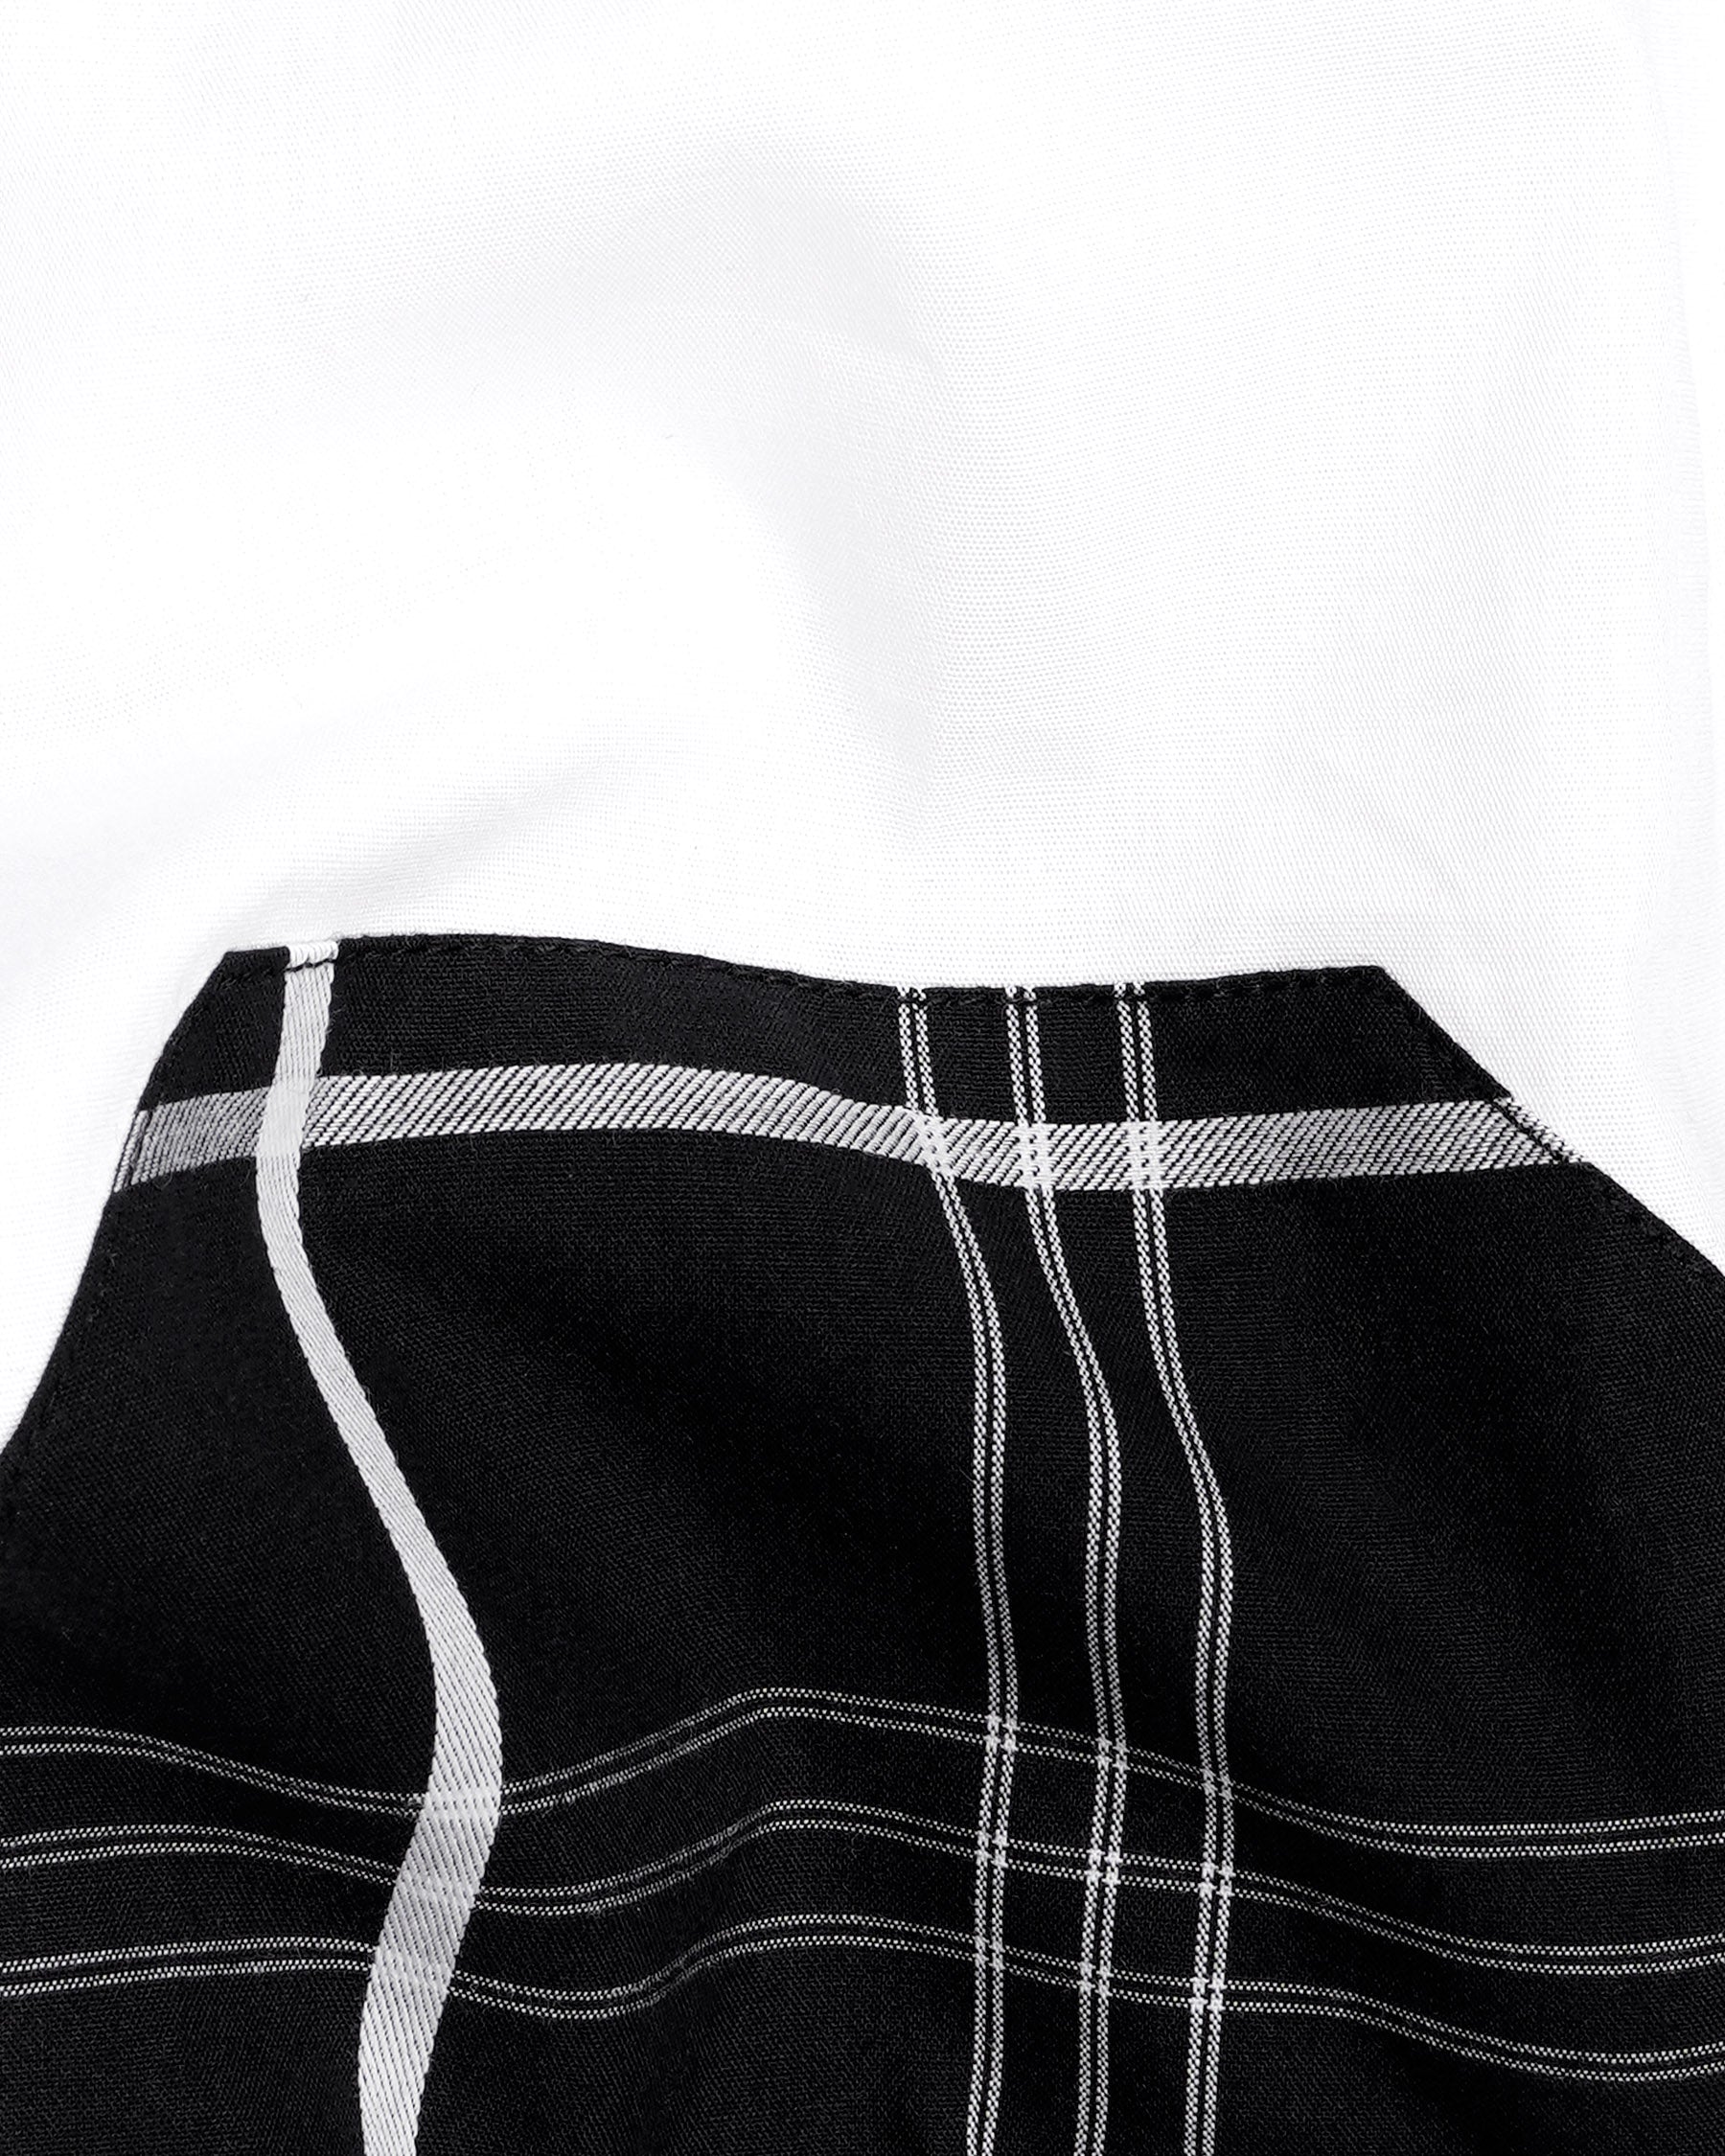 Jade Black and White Dobby Textured Premium Giza Cotton Designer Shirt 7716-P189-38, 7716-P189-39, 7716-P189-40, 7716-P189-42, 7716-P189-44, 7716-P189-46, 7716-P189-48, 7716-P189-50, 7716-P189-52